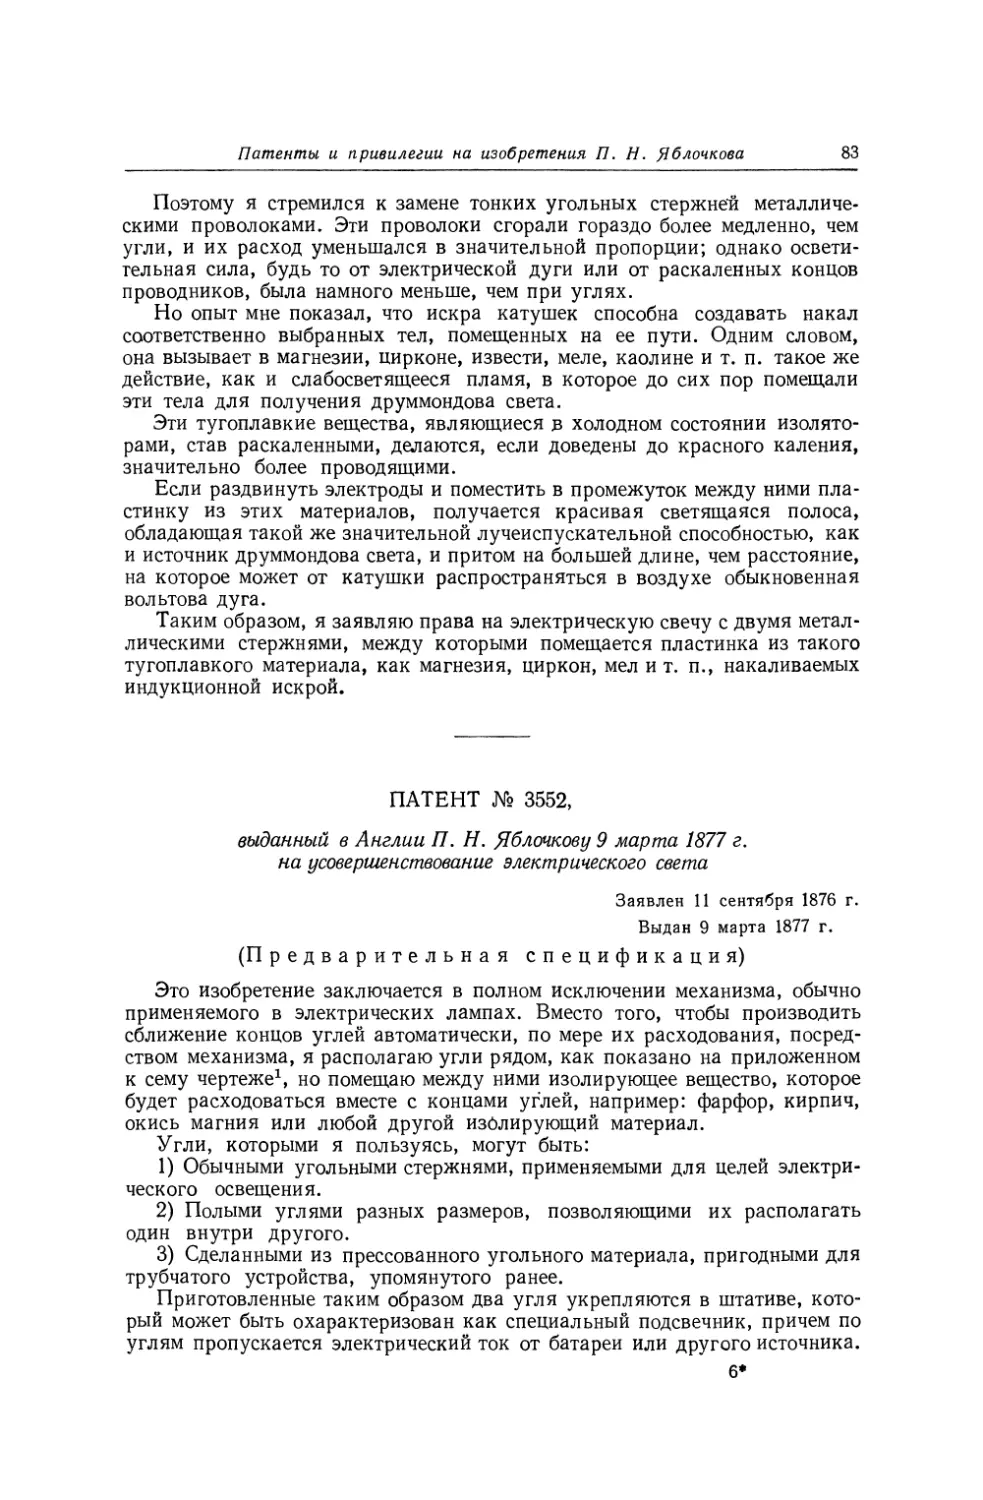 Патент № 3552, выданный в Англии П. Н. Яблочкову 9 марта 1877 г. на усовершенствование электрического света